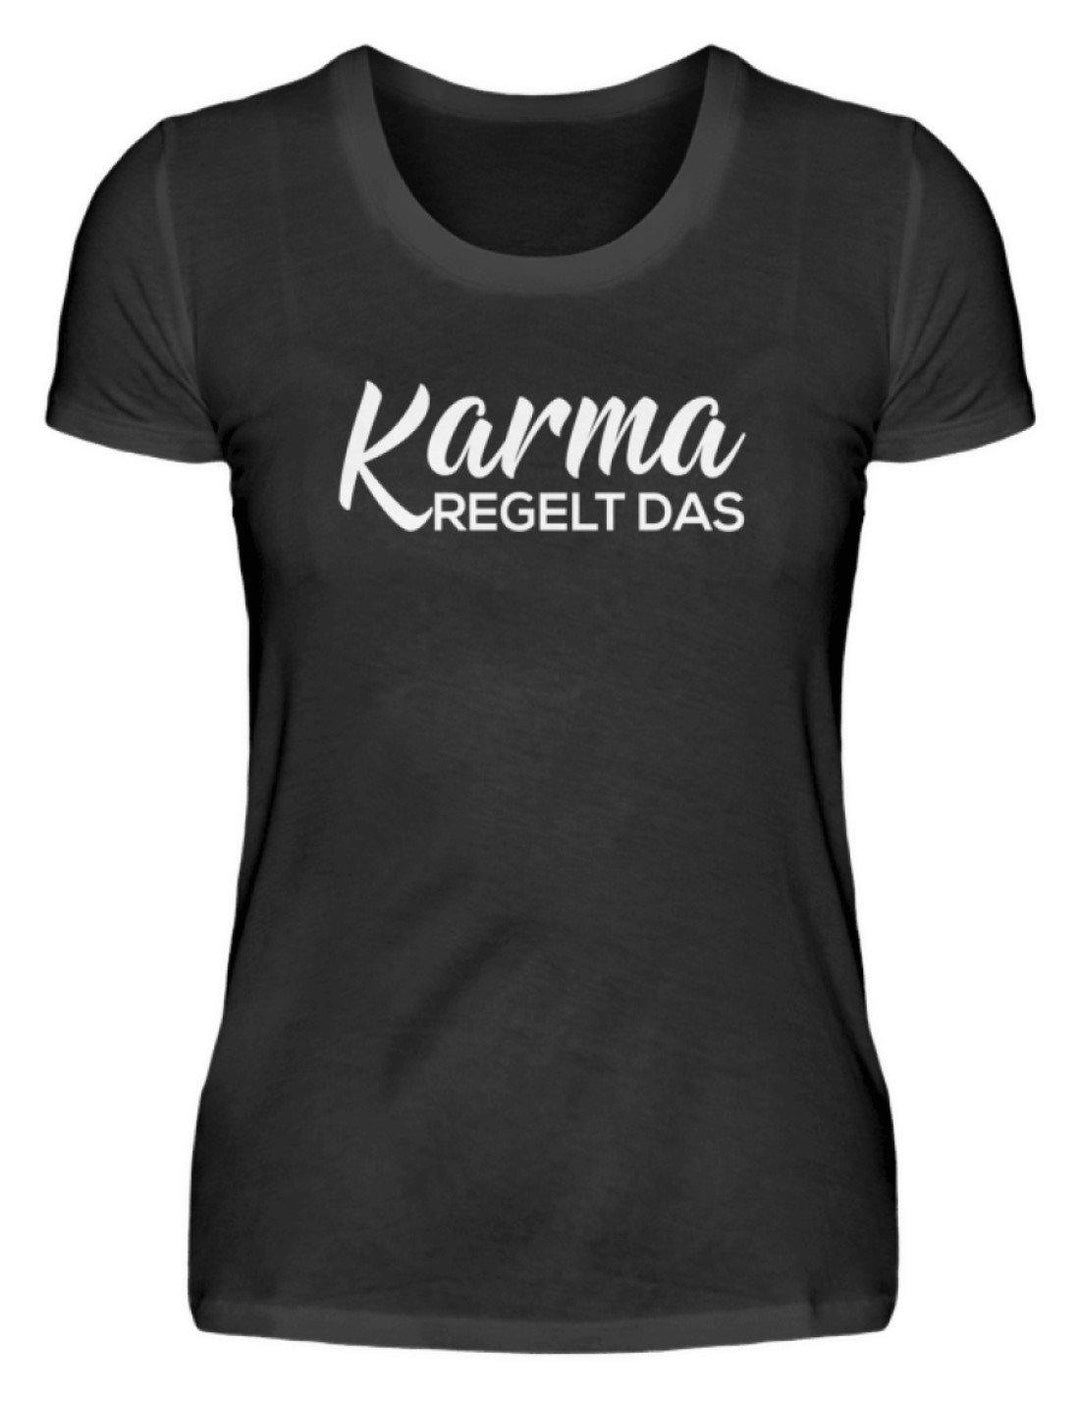 Karma regelt das - Words on Shirts  - Damenshirt - Words on Shirts Sag es mit dem Mittelfinger Shirts Hoodies Sweatshirt Taschen Gymsack Spruch Sprüche Statement